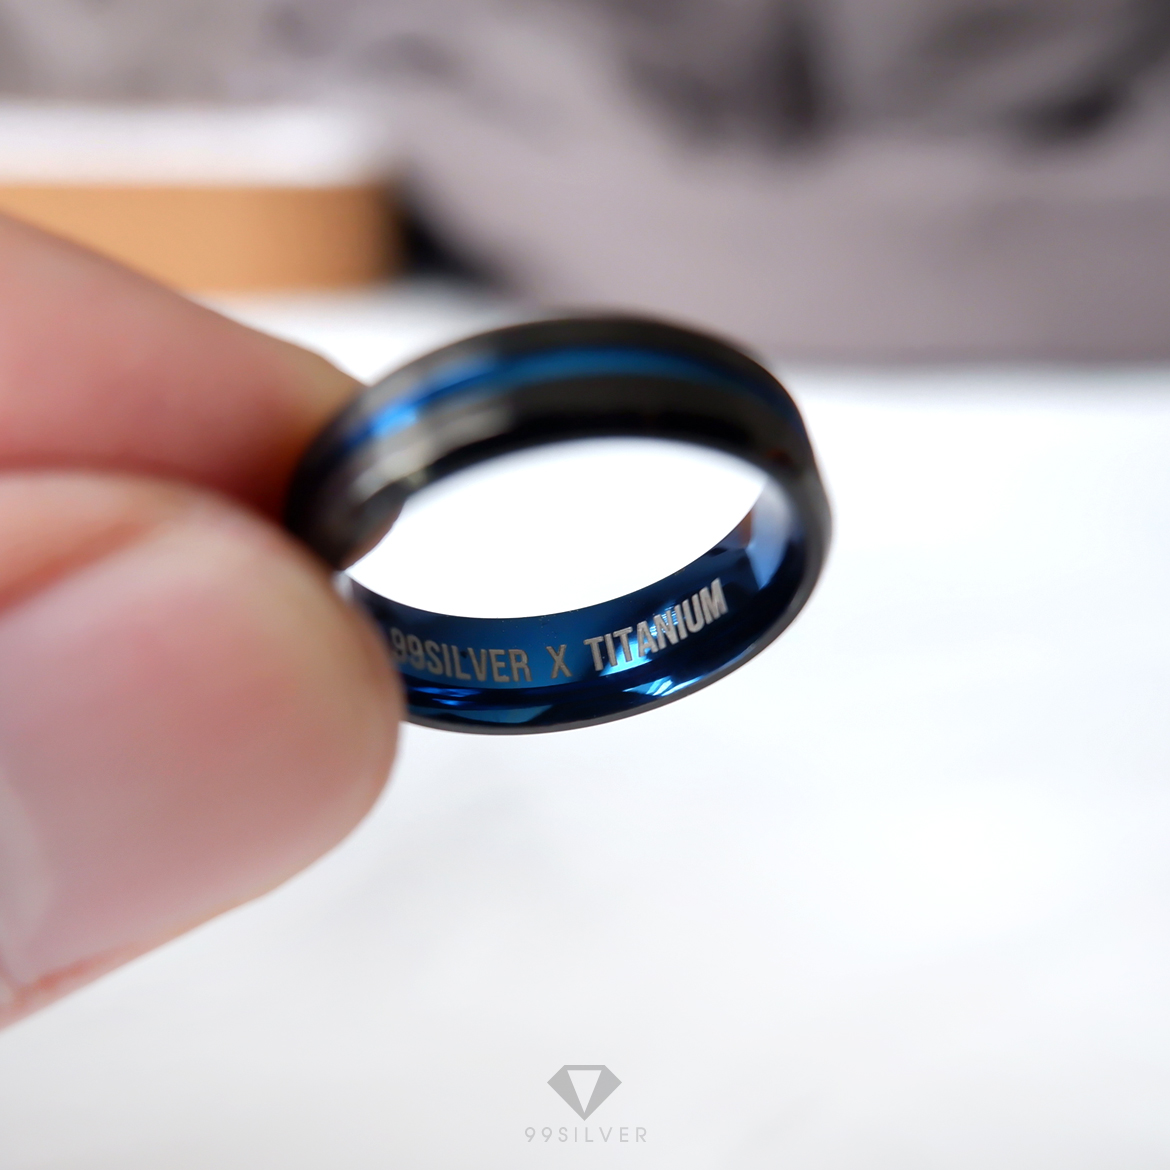 แหวนสแตนเลส Blue Black ไทเทเนี่ยม หน้ากว้าง 6 มิล ผิวเรียบปัดด้านแฮร์ไลน์